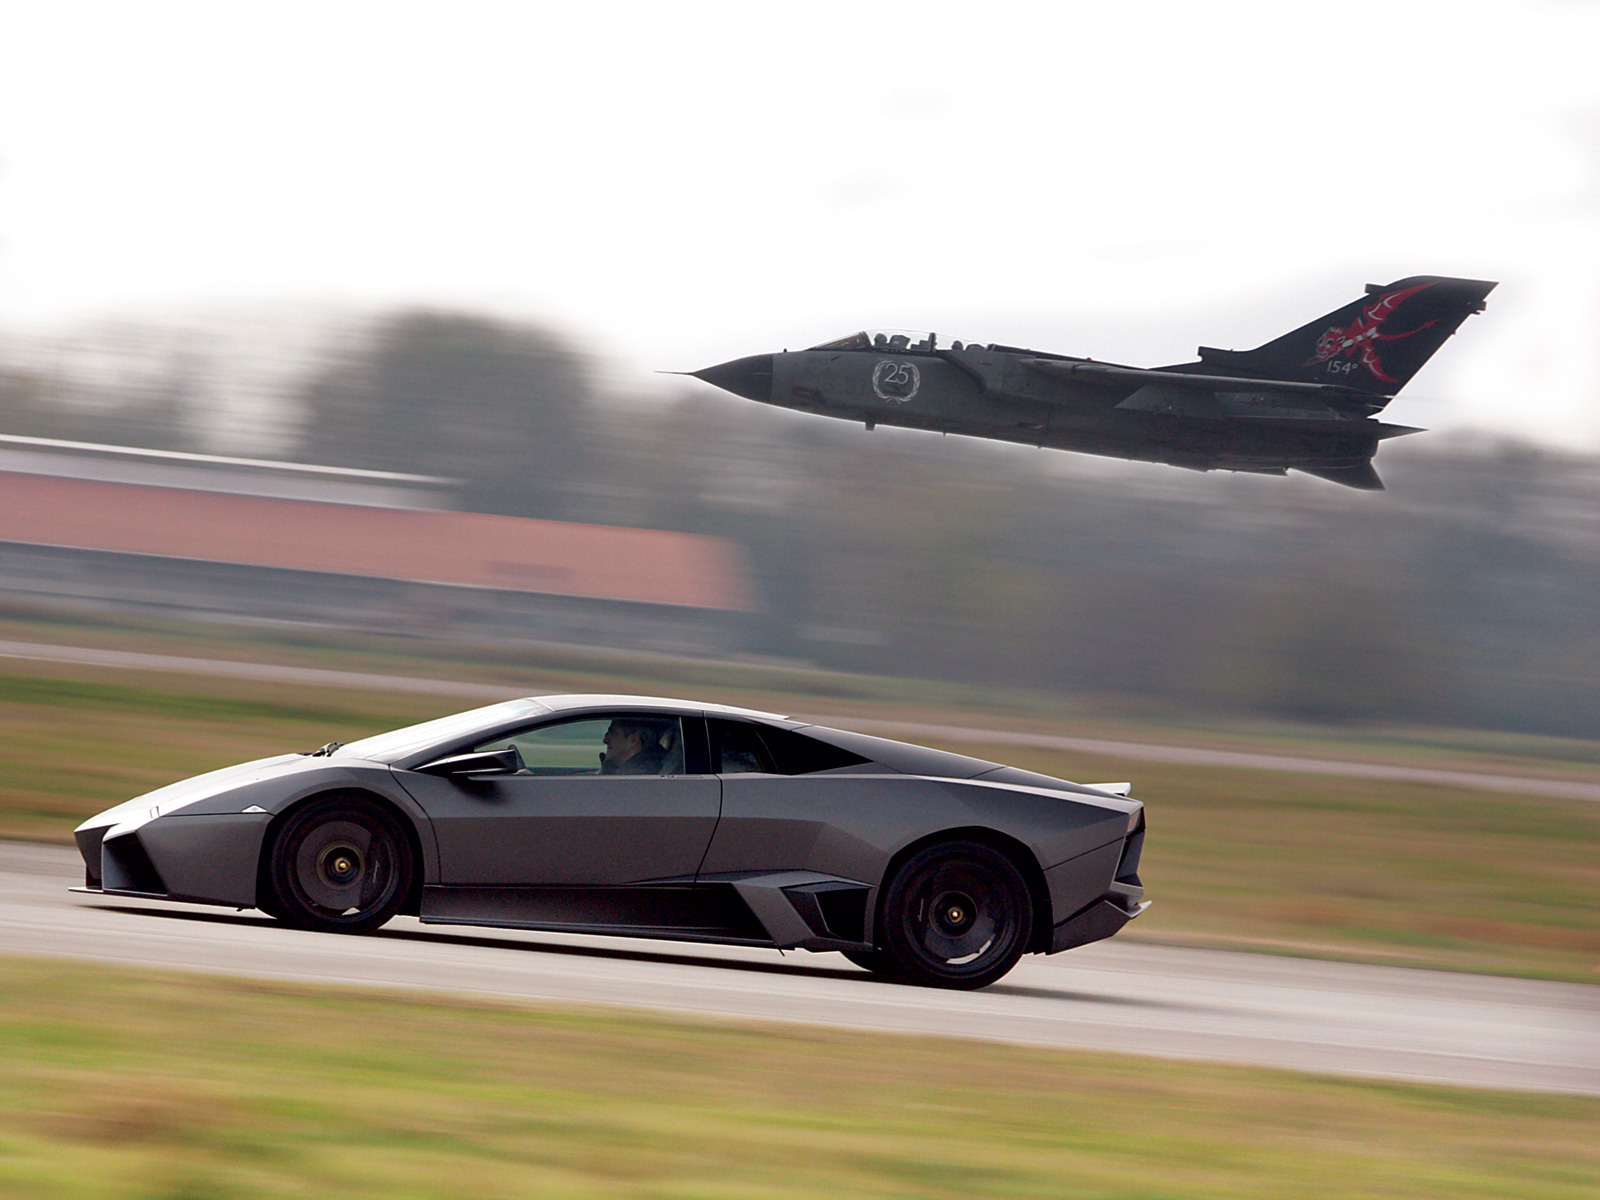 2008, Lamborghini, Reventon, Supercar, Jet, Military Wallpaper